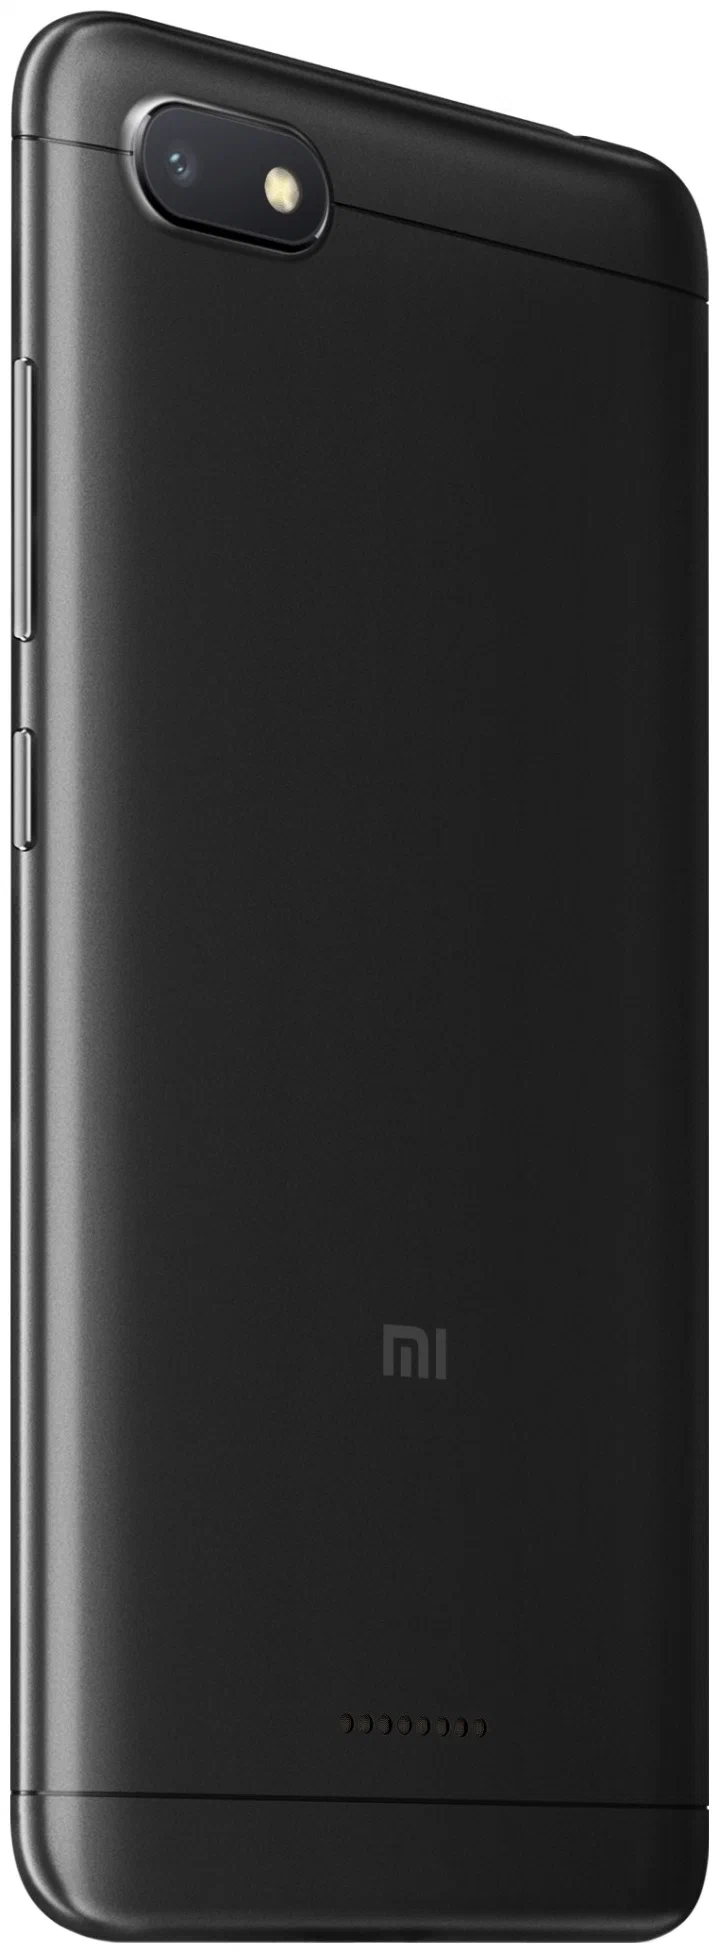 Xiaomi Redmi 6A - вес: 145 г